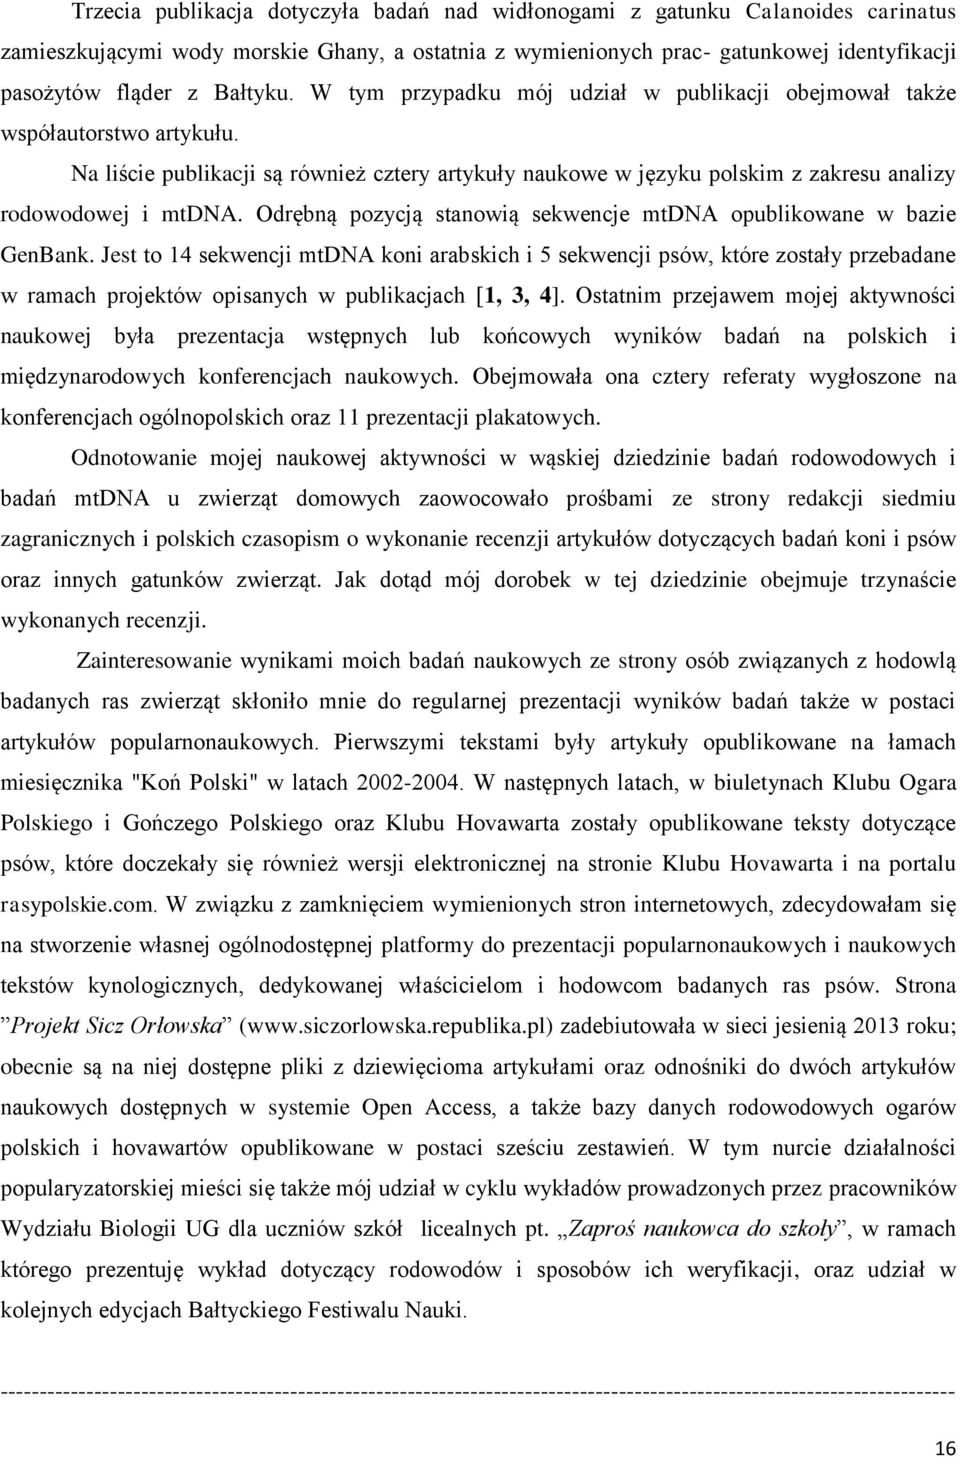 Na liście publikacji są również cztery artykuły naukowe w języku polskim z zakresu analizy rodowodowej i mtdna. Odrębną pozycją stanowią sekwencje mtdna opublikowane w bazie GenBank.